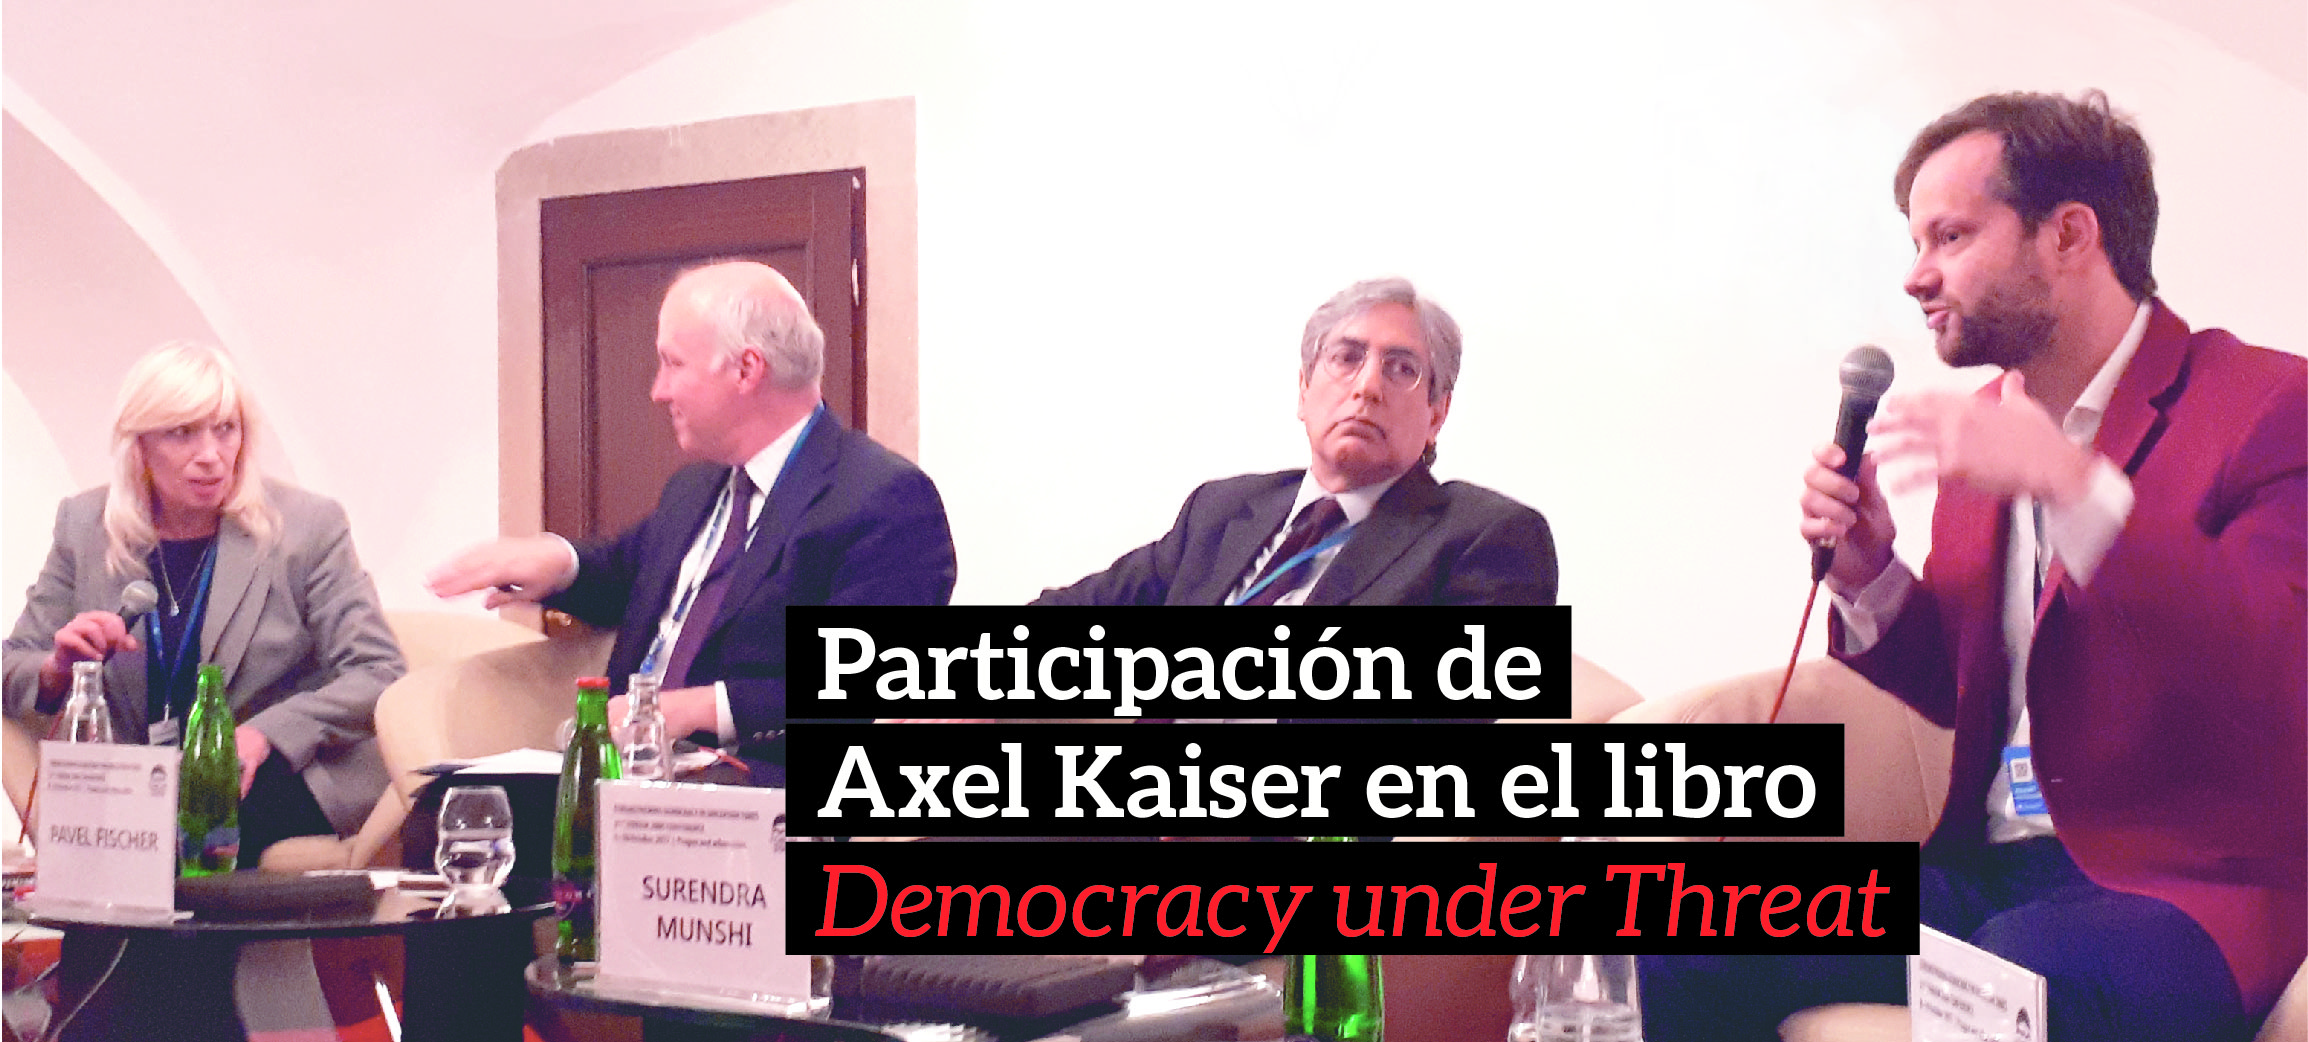 Axel Kaiser participa en el libro "Democracy under Threat" de Oxford University Press y Forum 2000